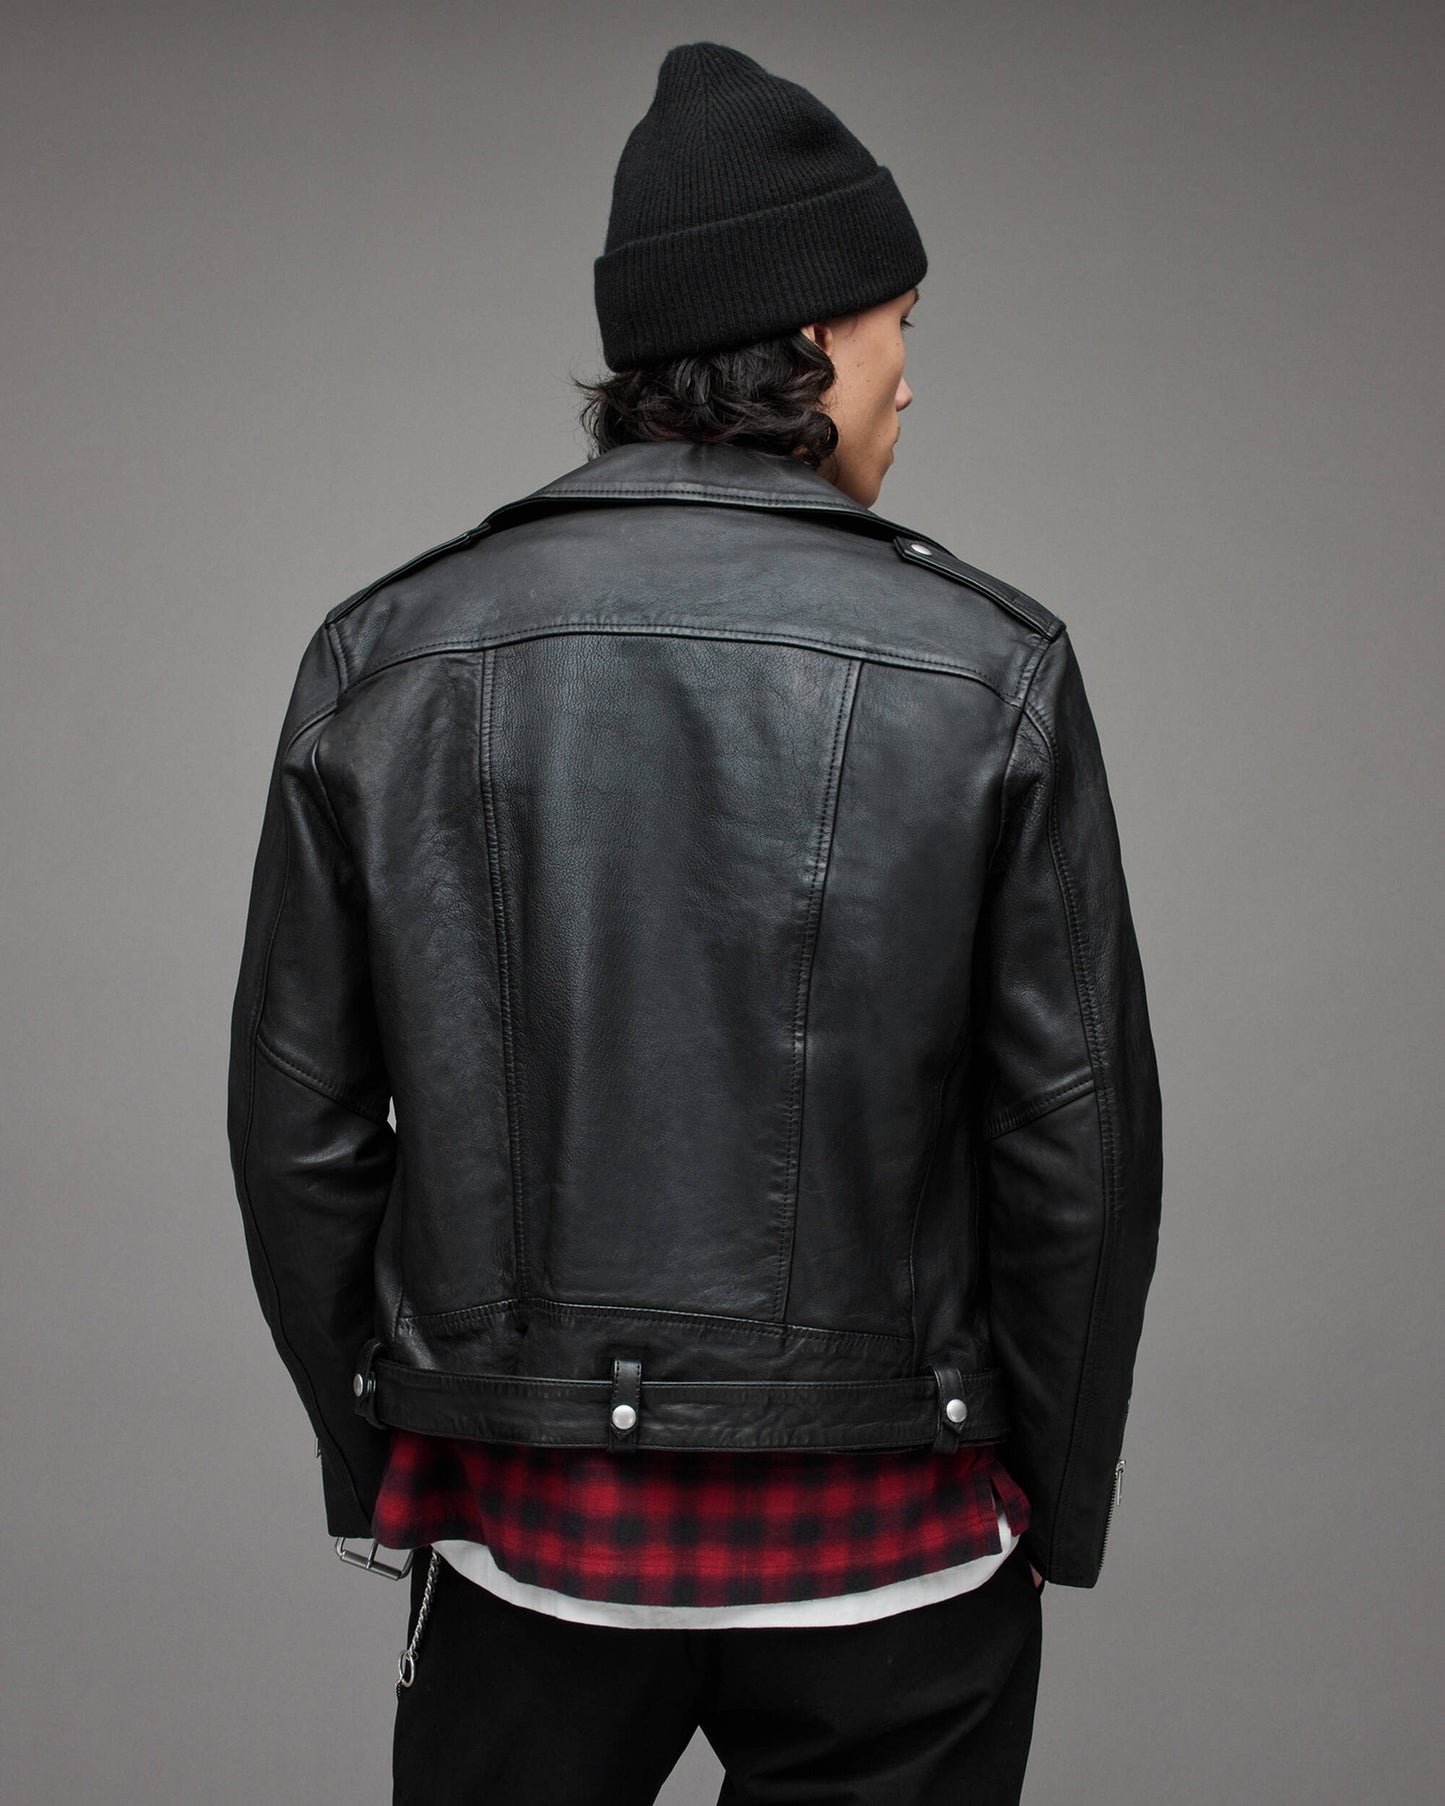 Men's Leather Biker Jacket In Black With Shoulder Trap